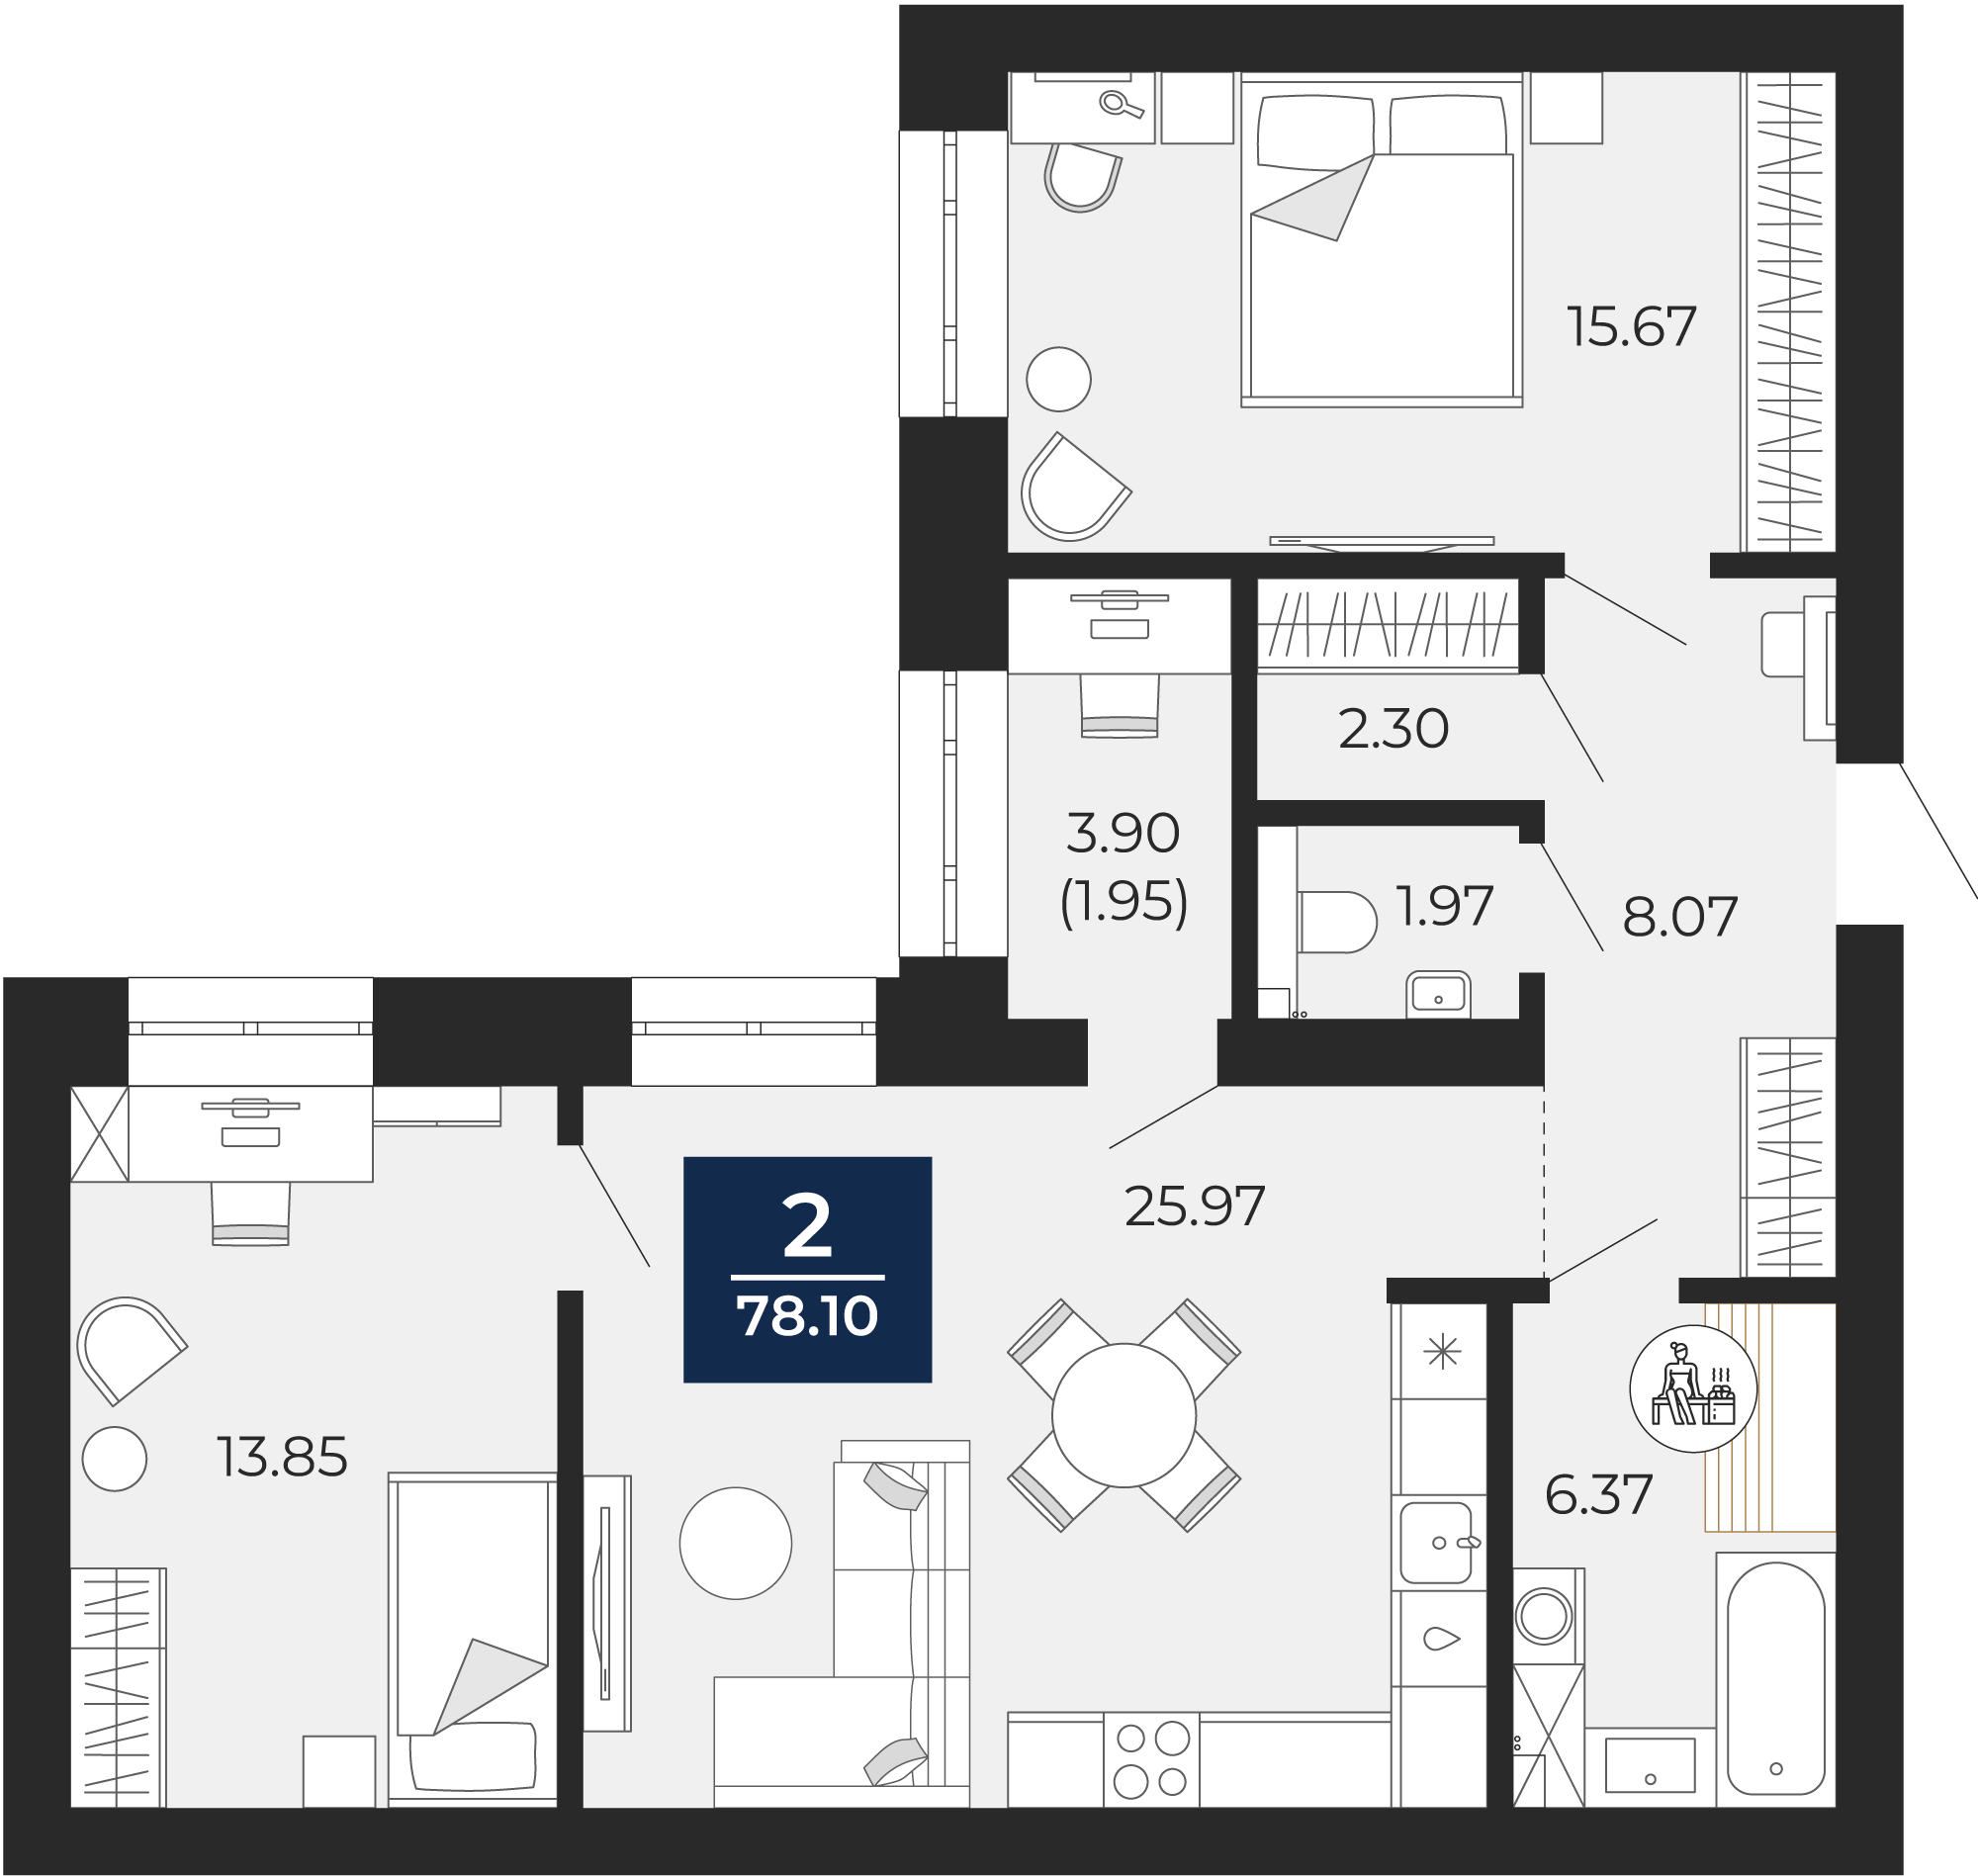 Квартира № 150, 2-комнатная, 78.1 кв. м, 5 этаж